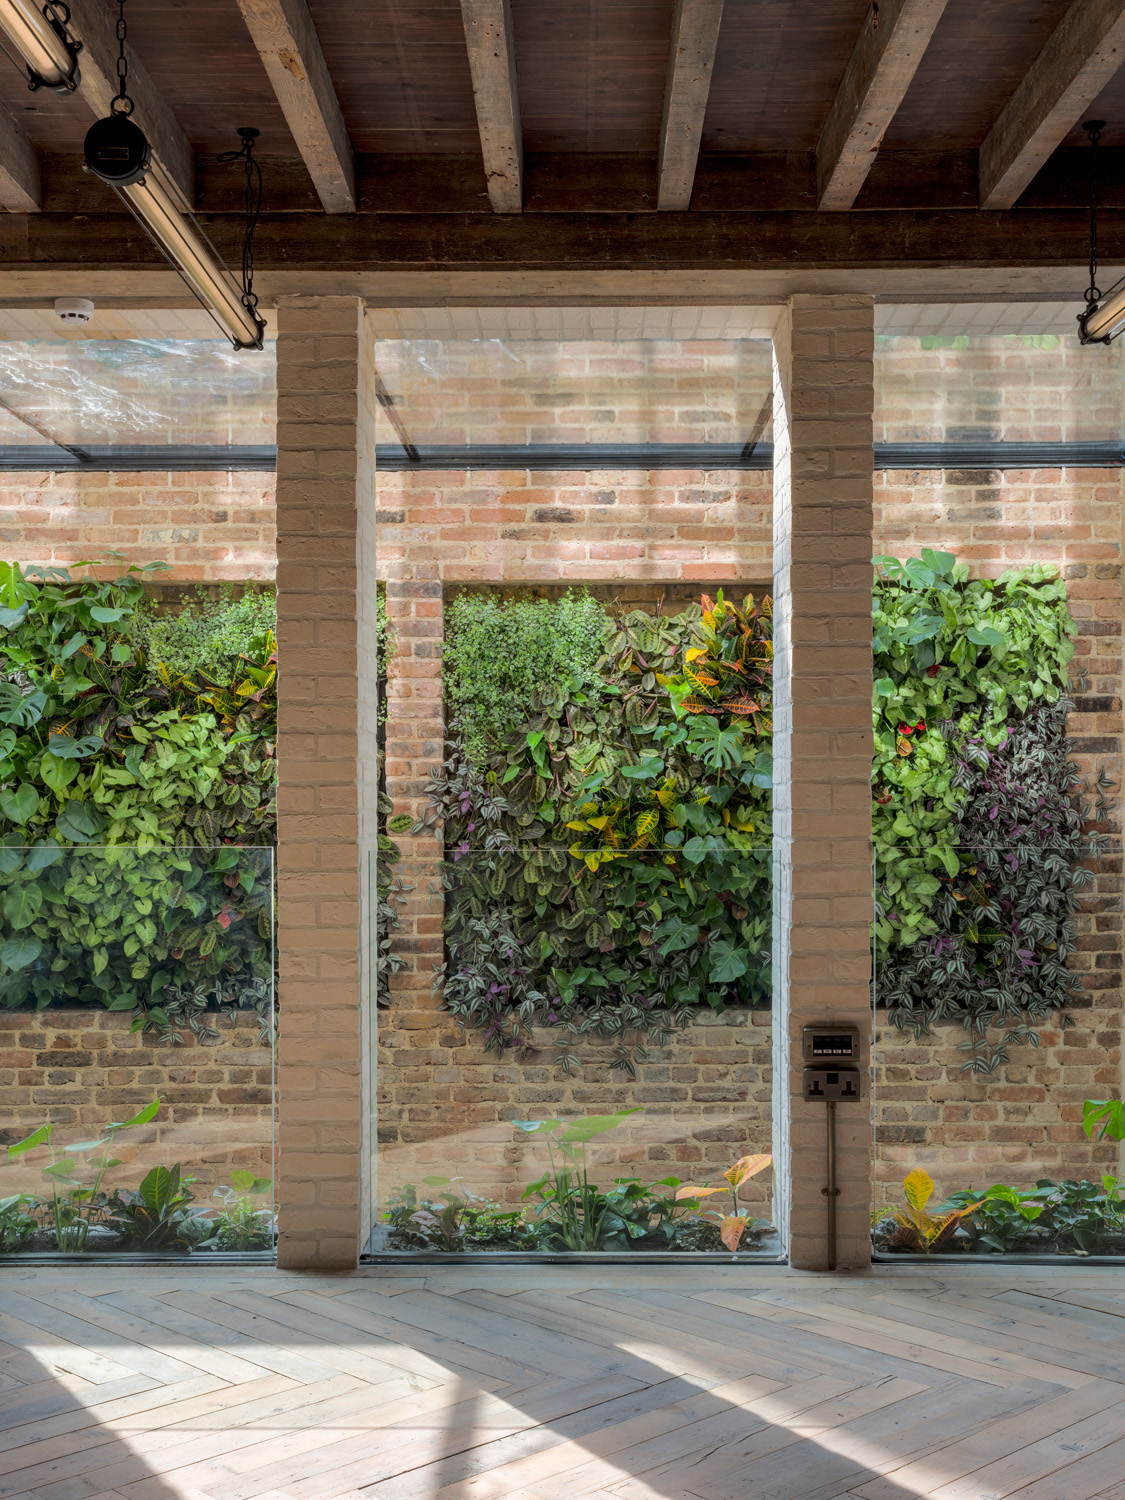 Glass windows by Morrow & Lorraine - contemporary architecture design studio in London